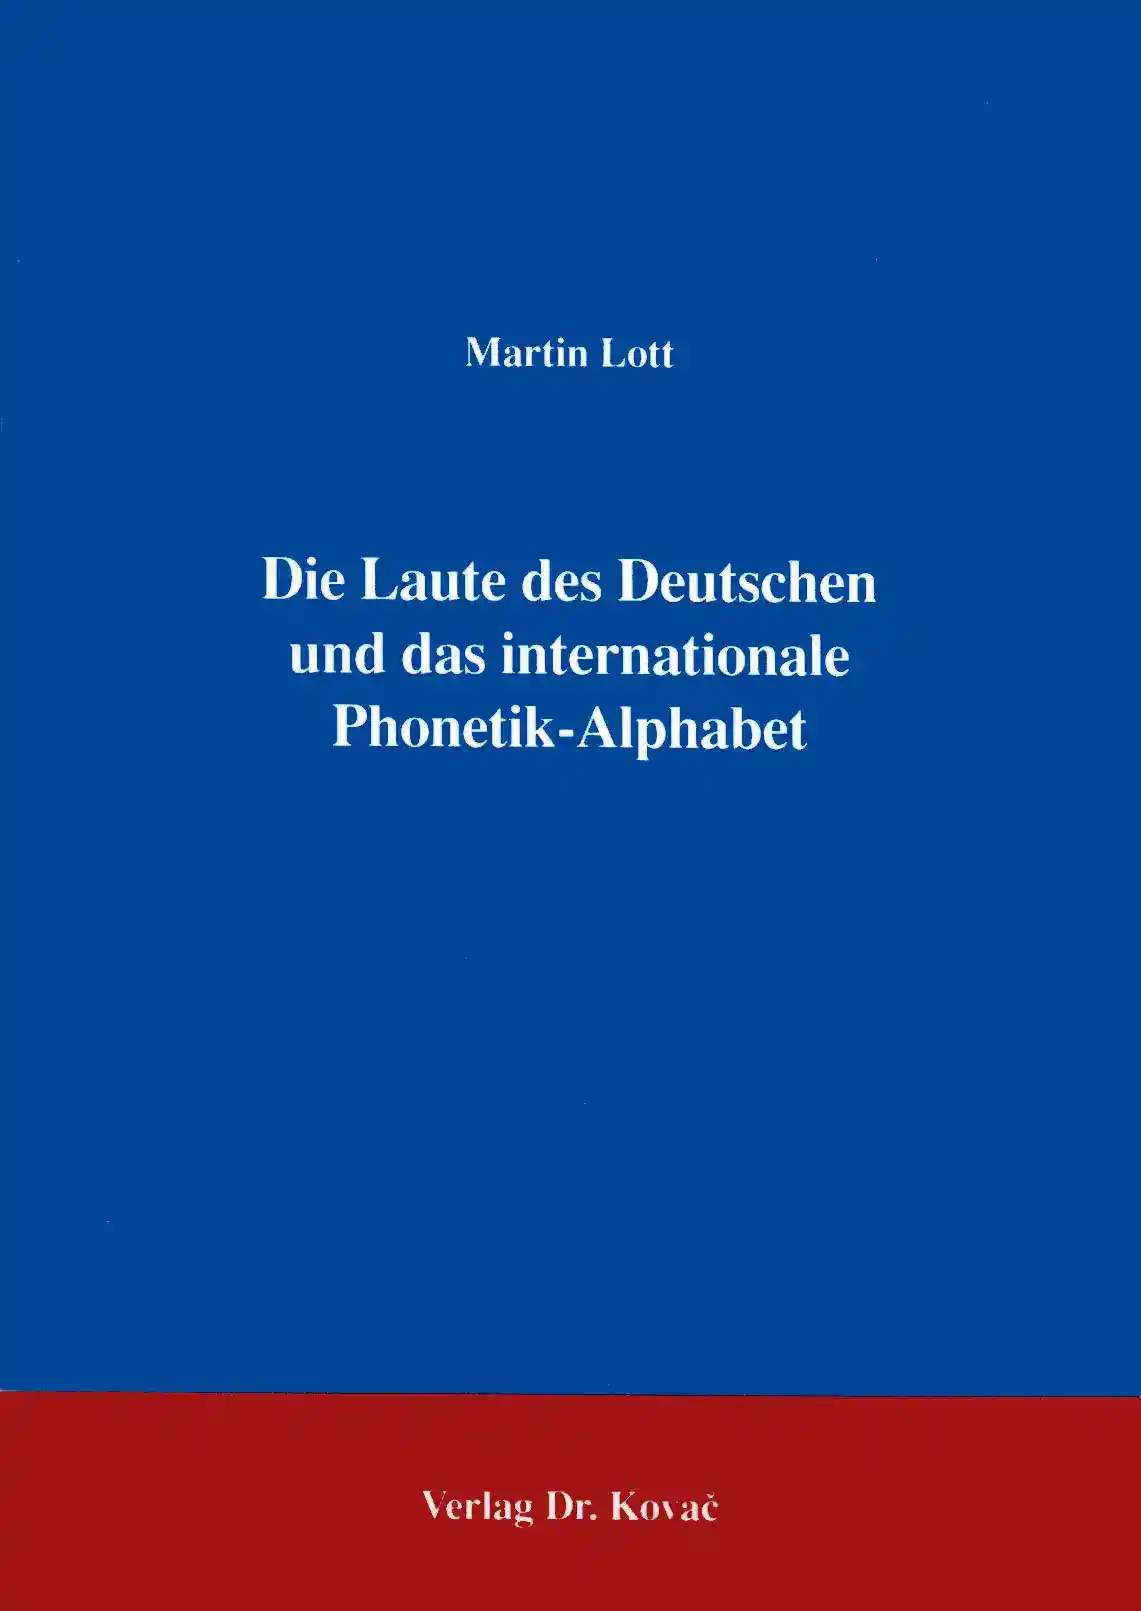 : Die Laute des Deutschen und das internationale Phonetik-Alphabet